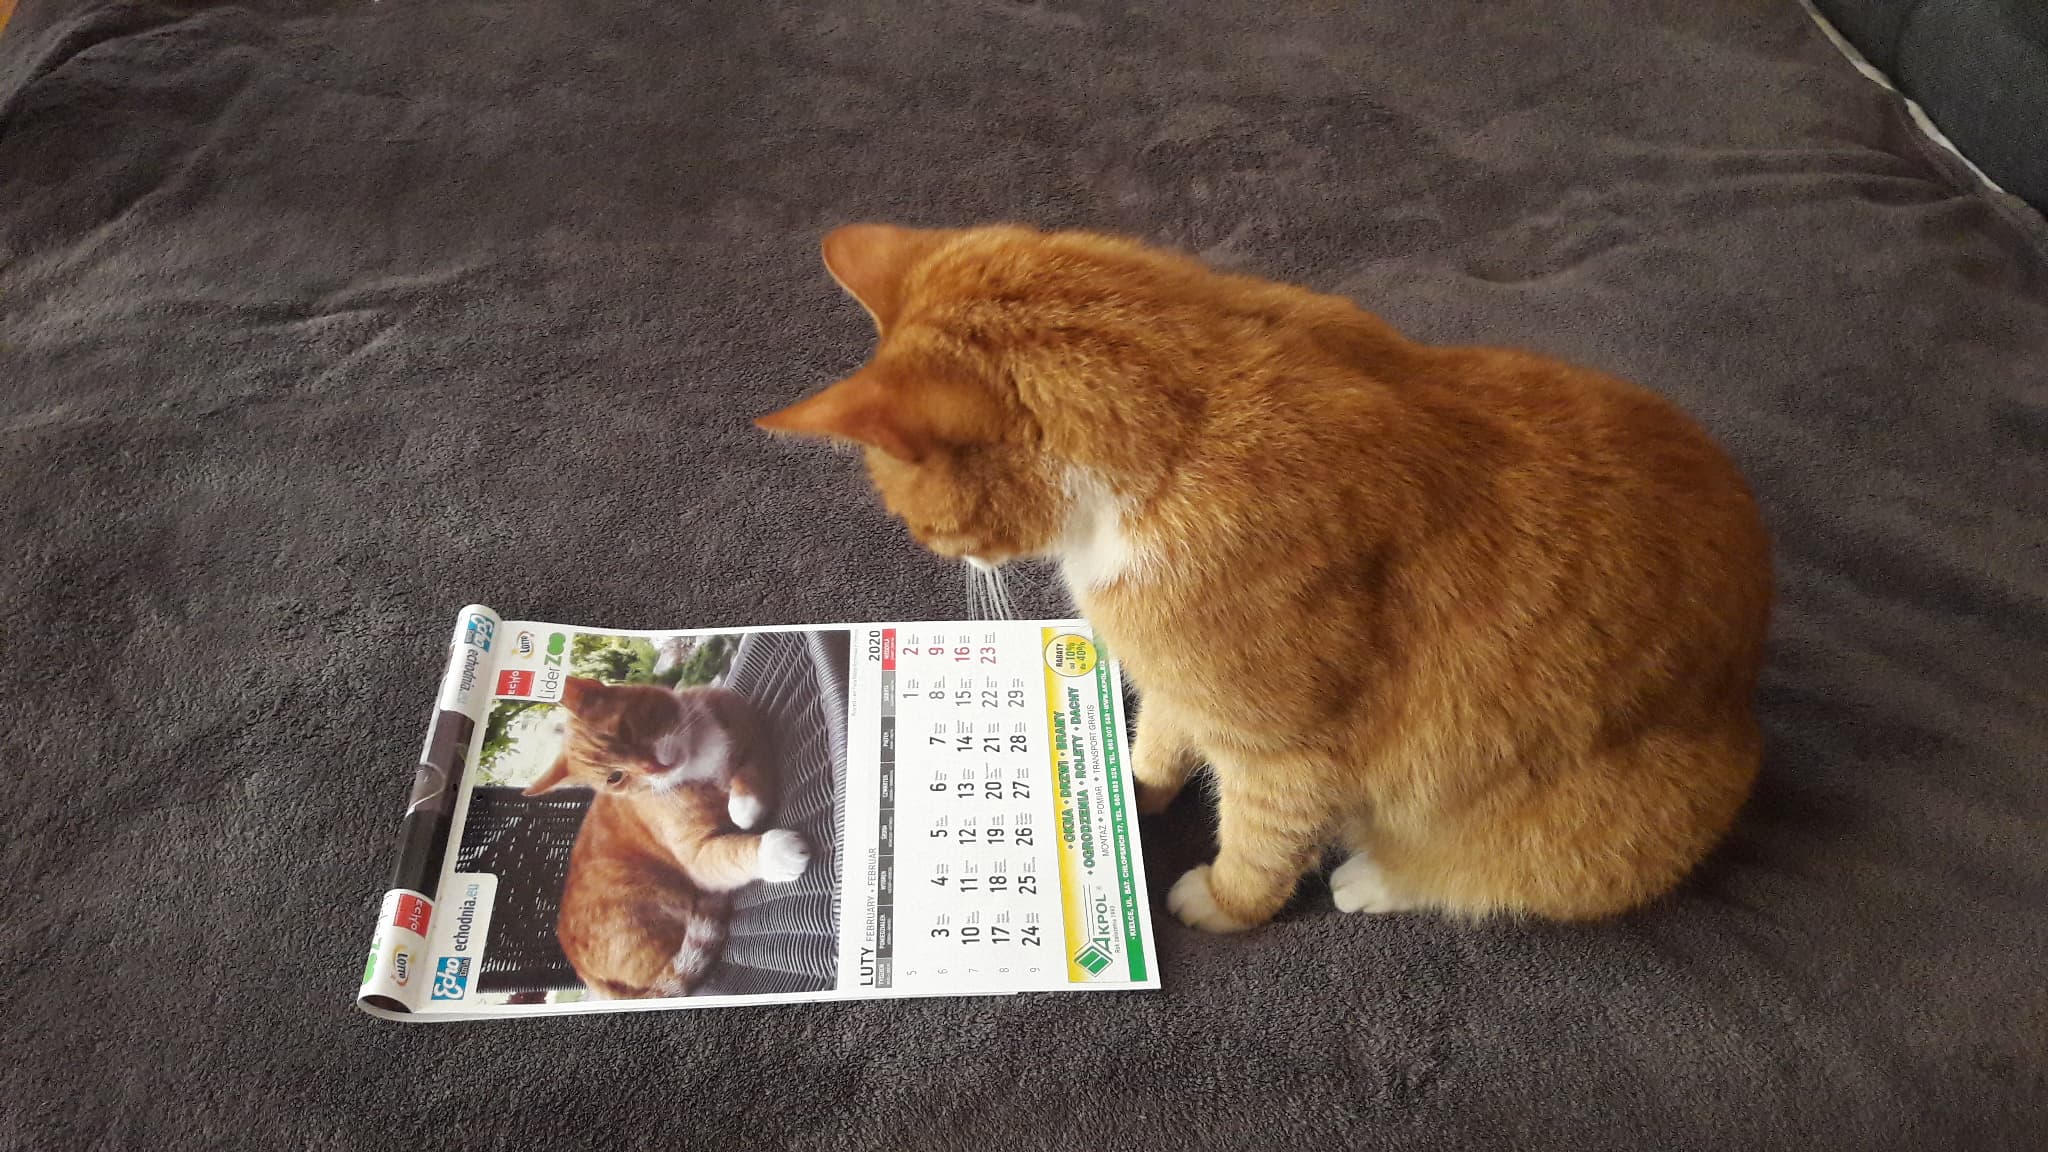 Rysiek z Chrobrza, podziwia kalendarz który zdobi jego zdjęcie